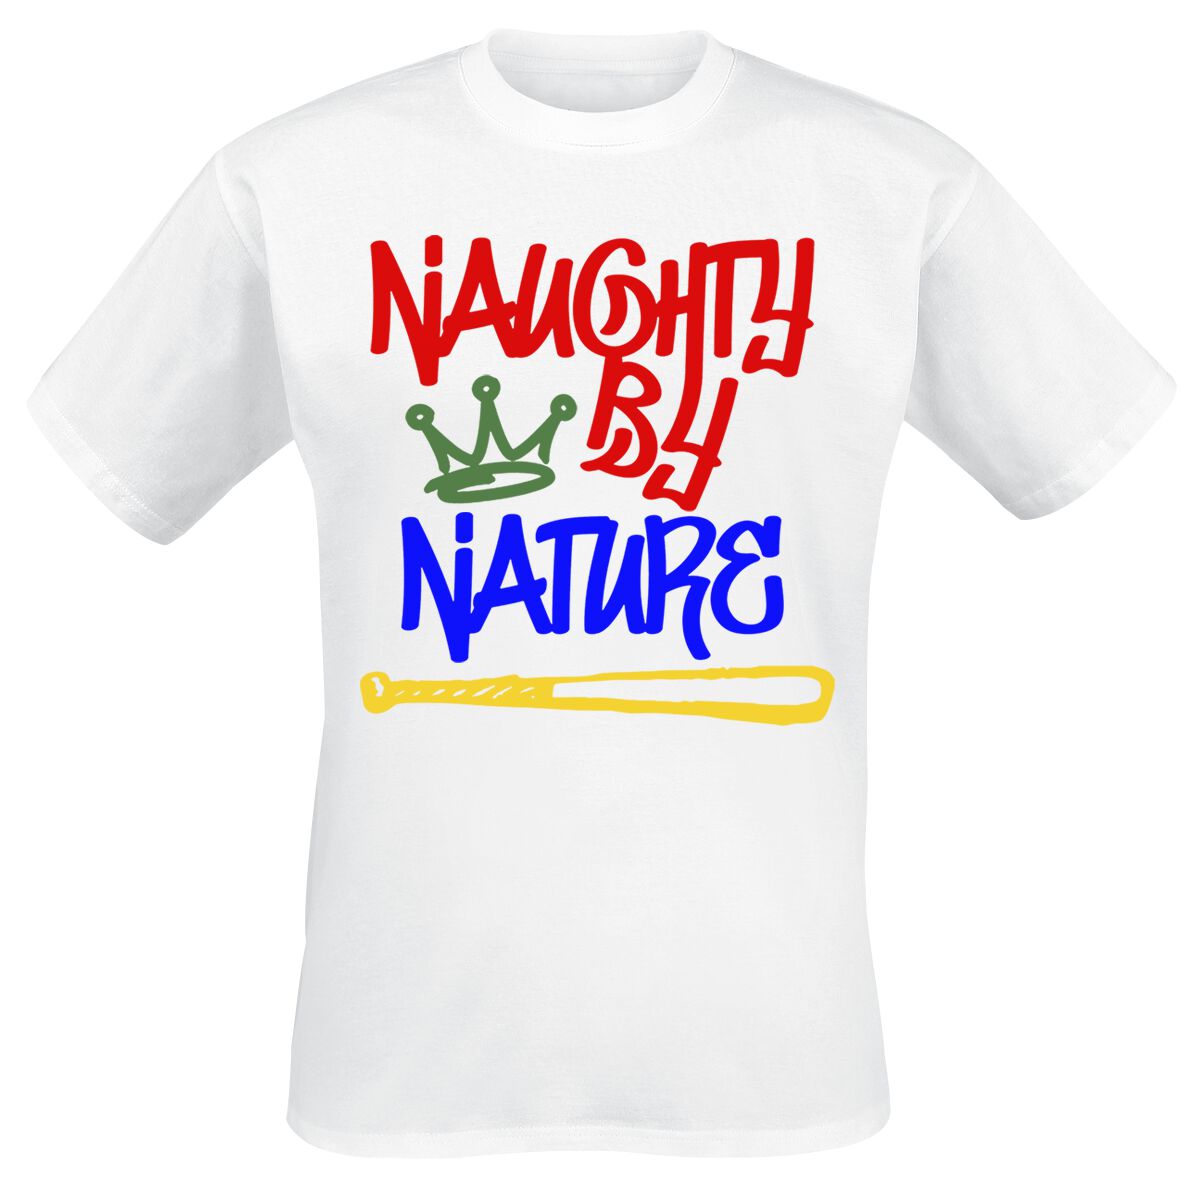 Naughty by Nature T-Shirt - Graffiti Logo - S bis 3XL - für Männer - Größe XXL - weiß  - Lizenziertes Merchandise!